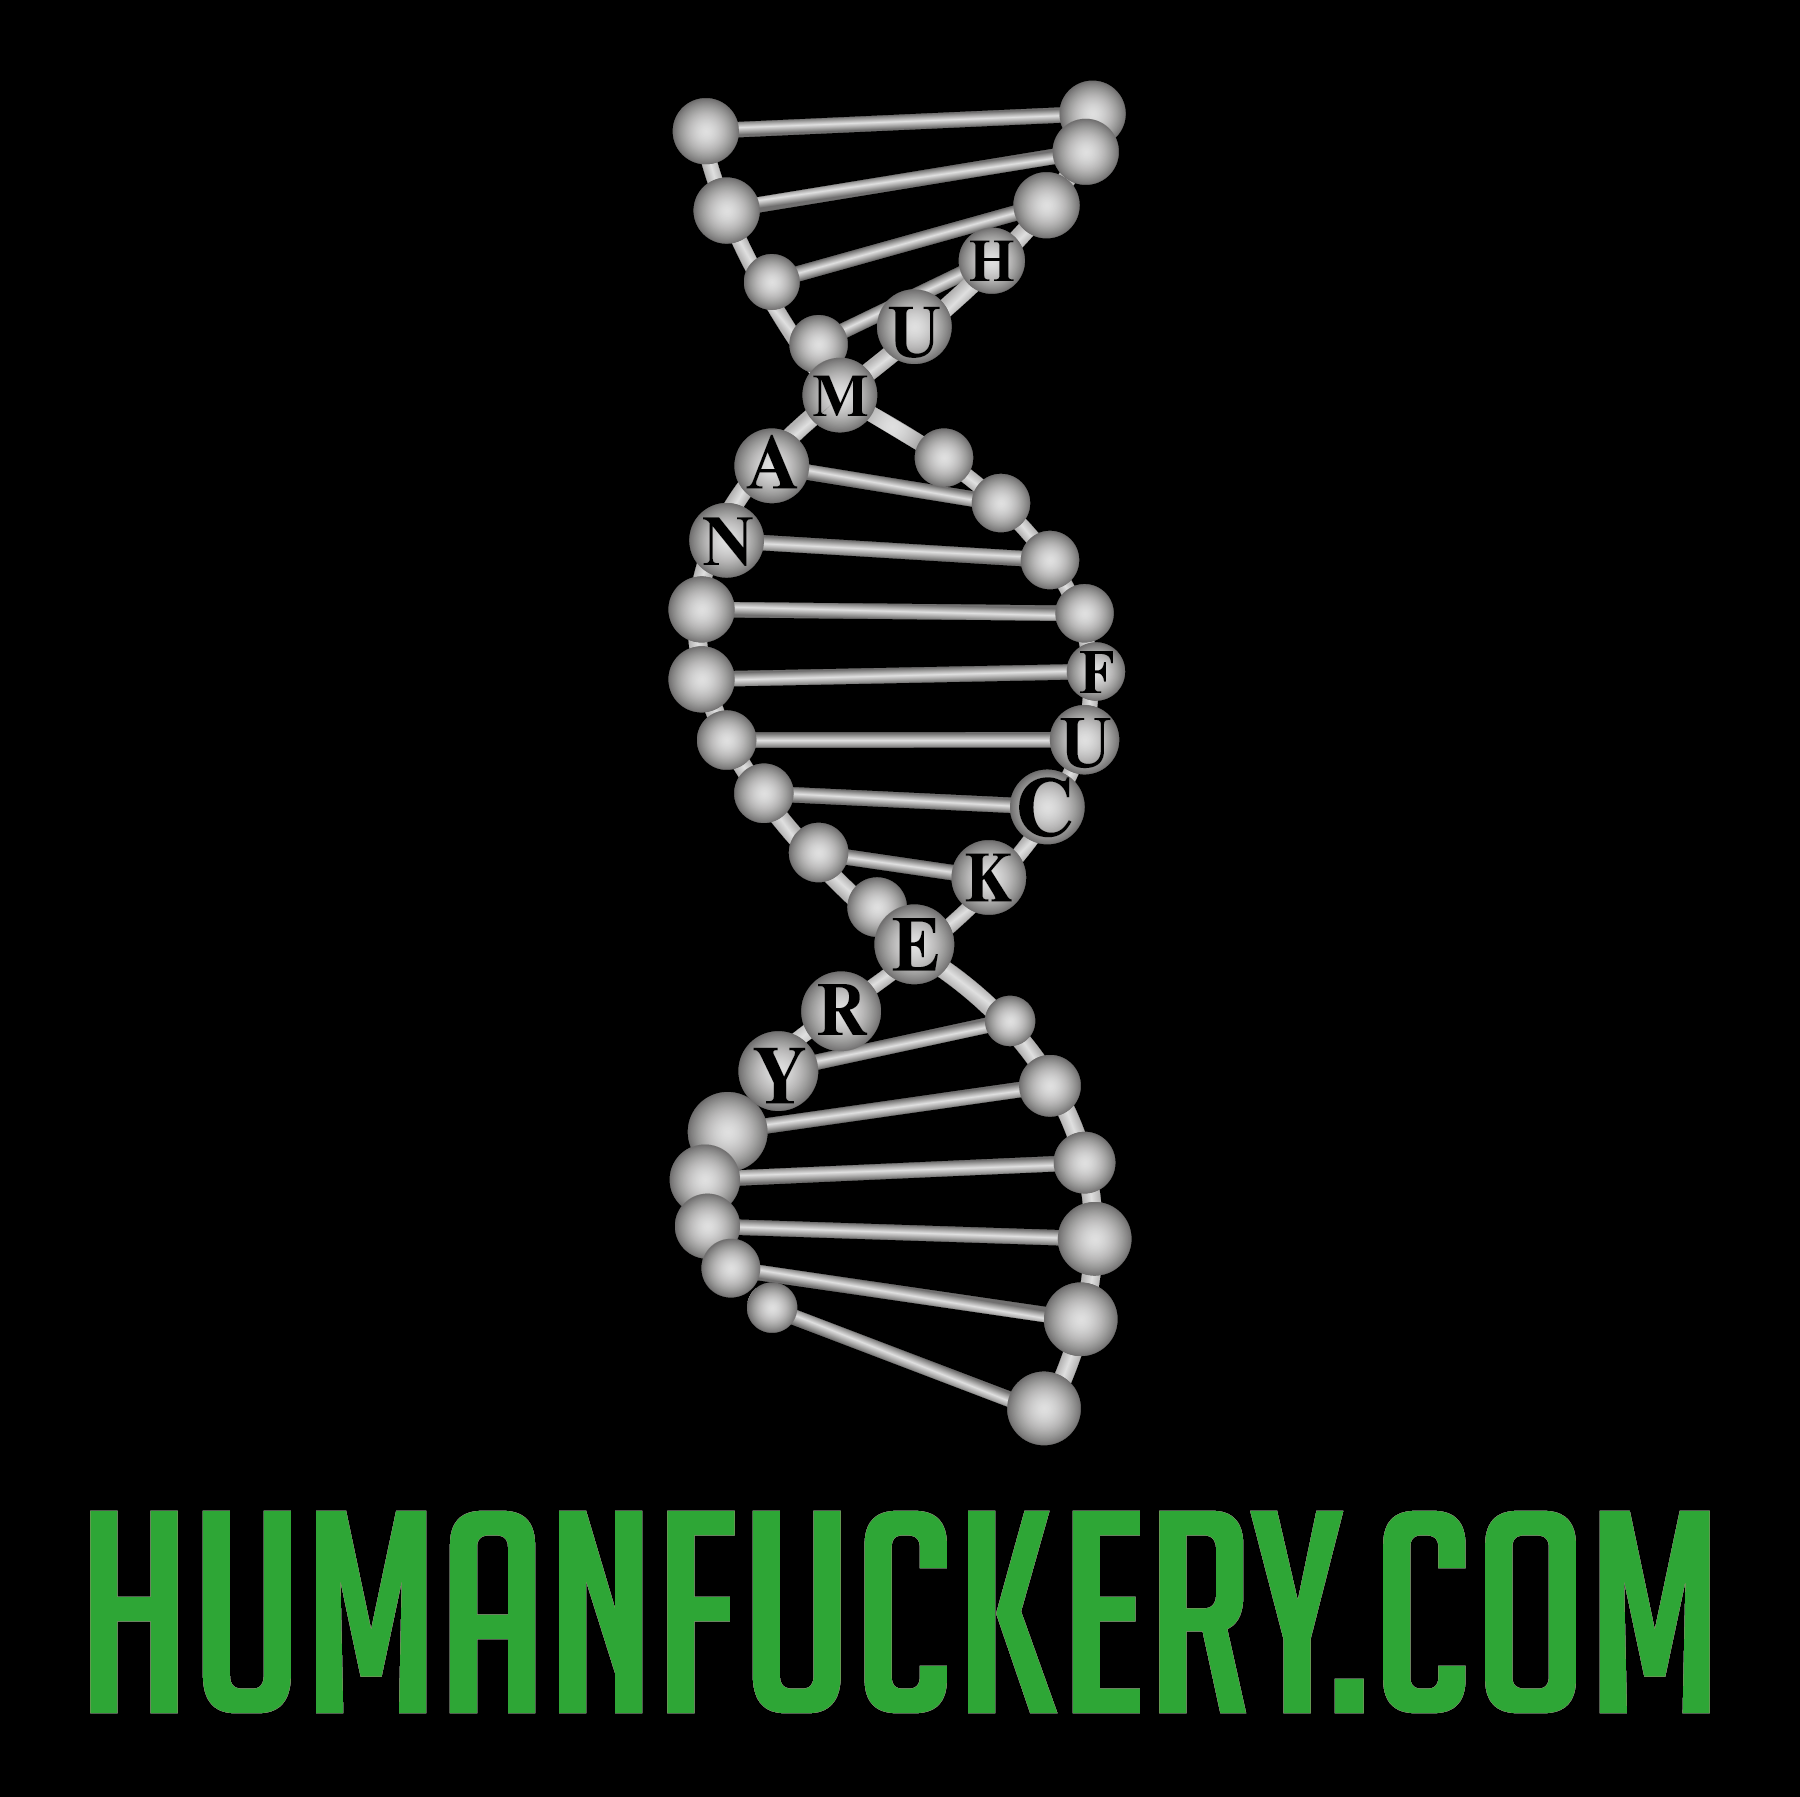 Humanfuckery.com's Official Site Logo